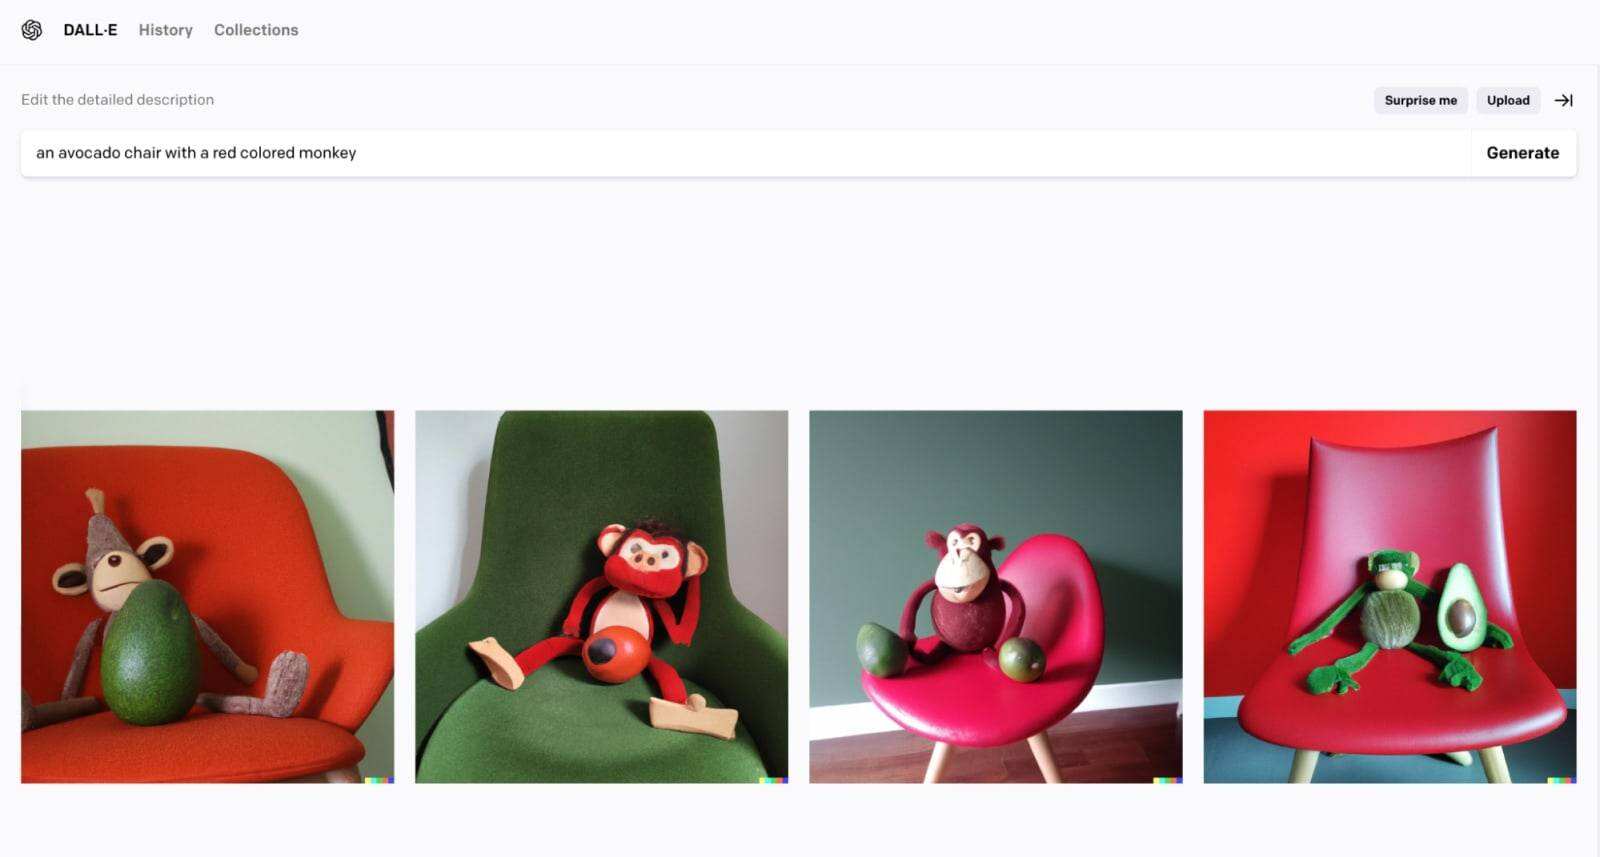 एक एवोकैडो कुर्सी और एक लाल बंदर की तस्वीर 2